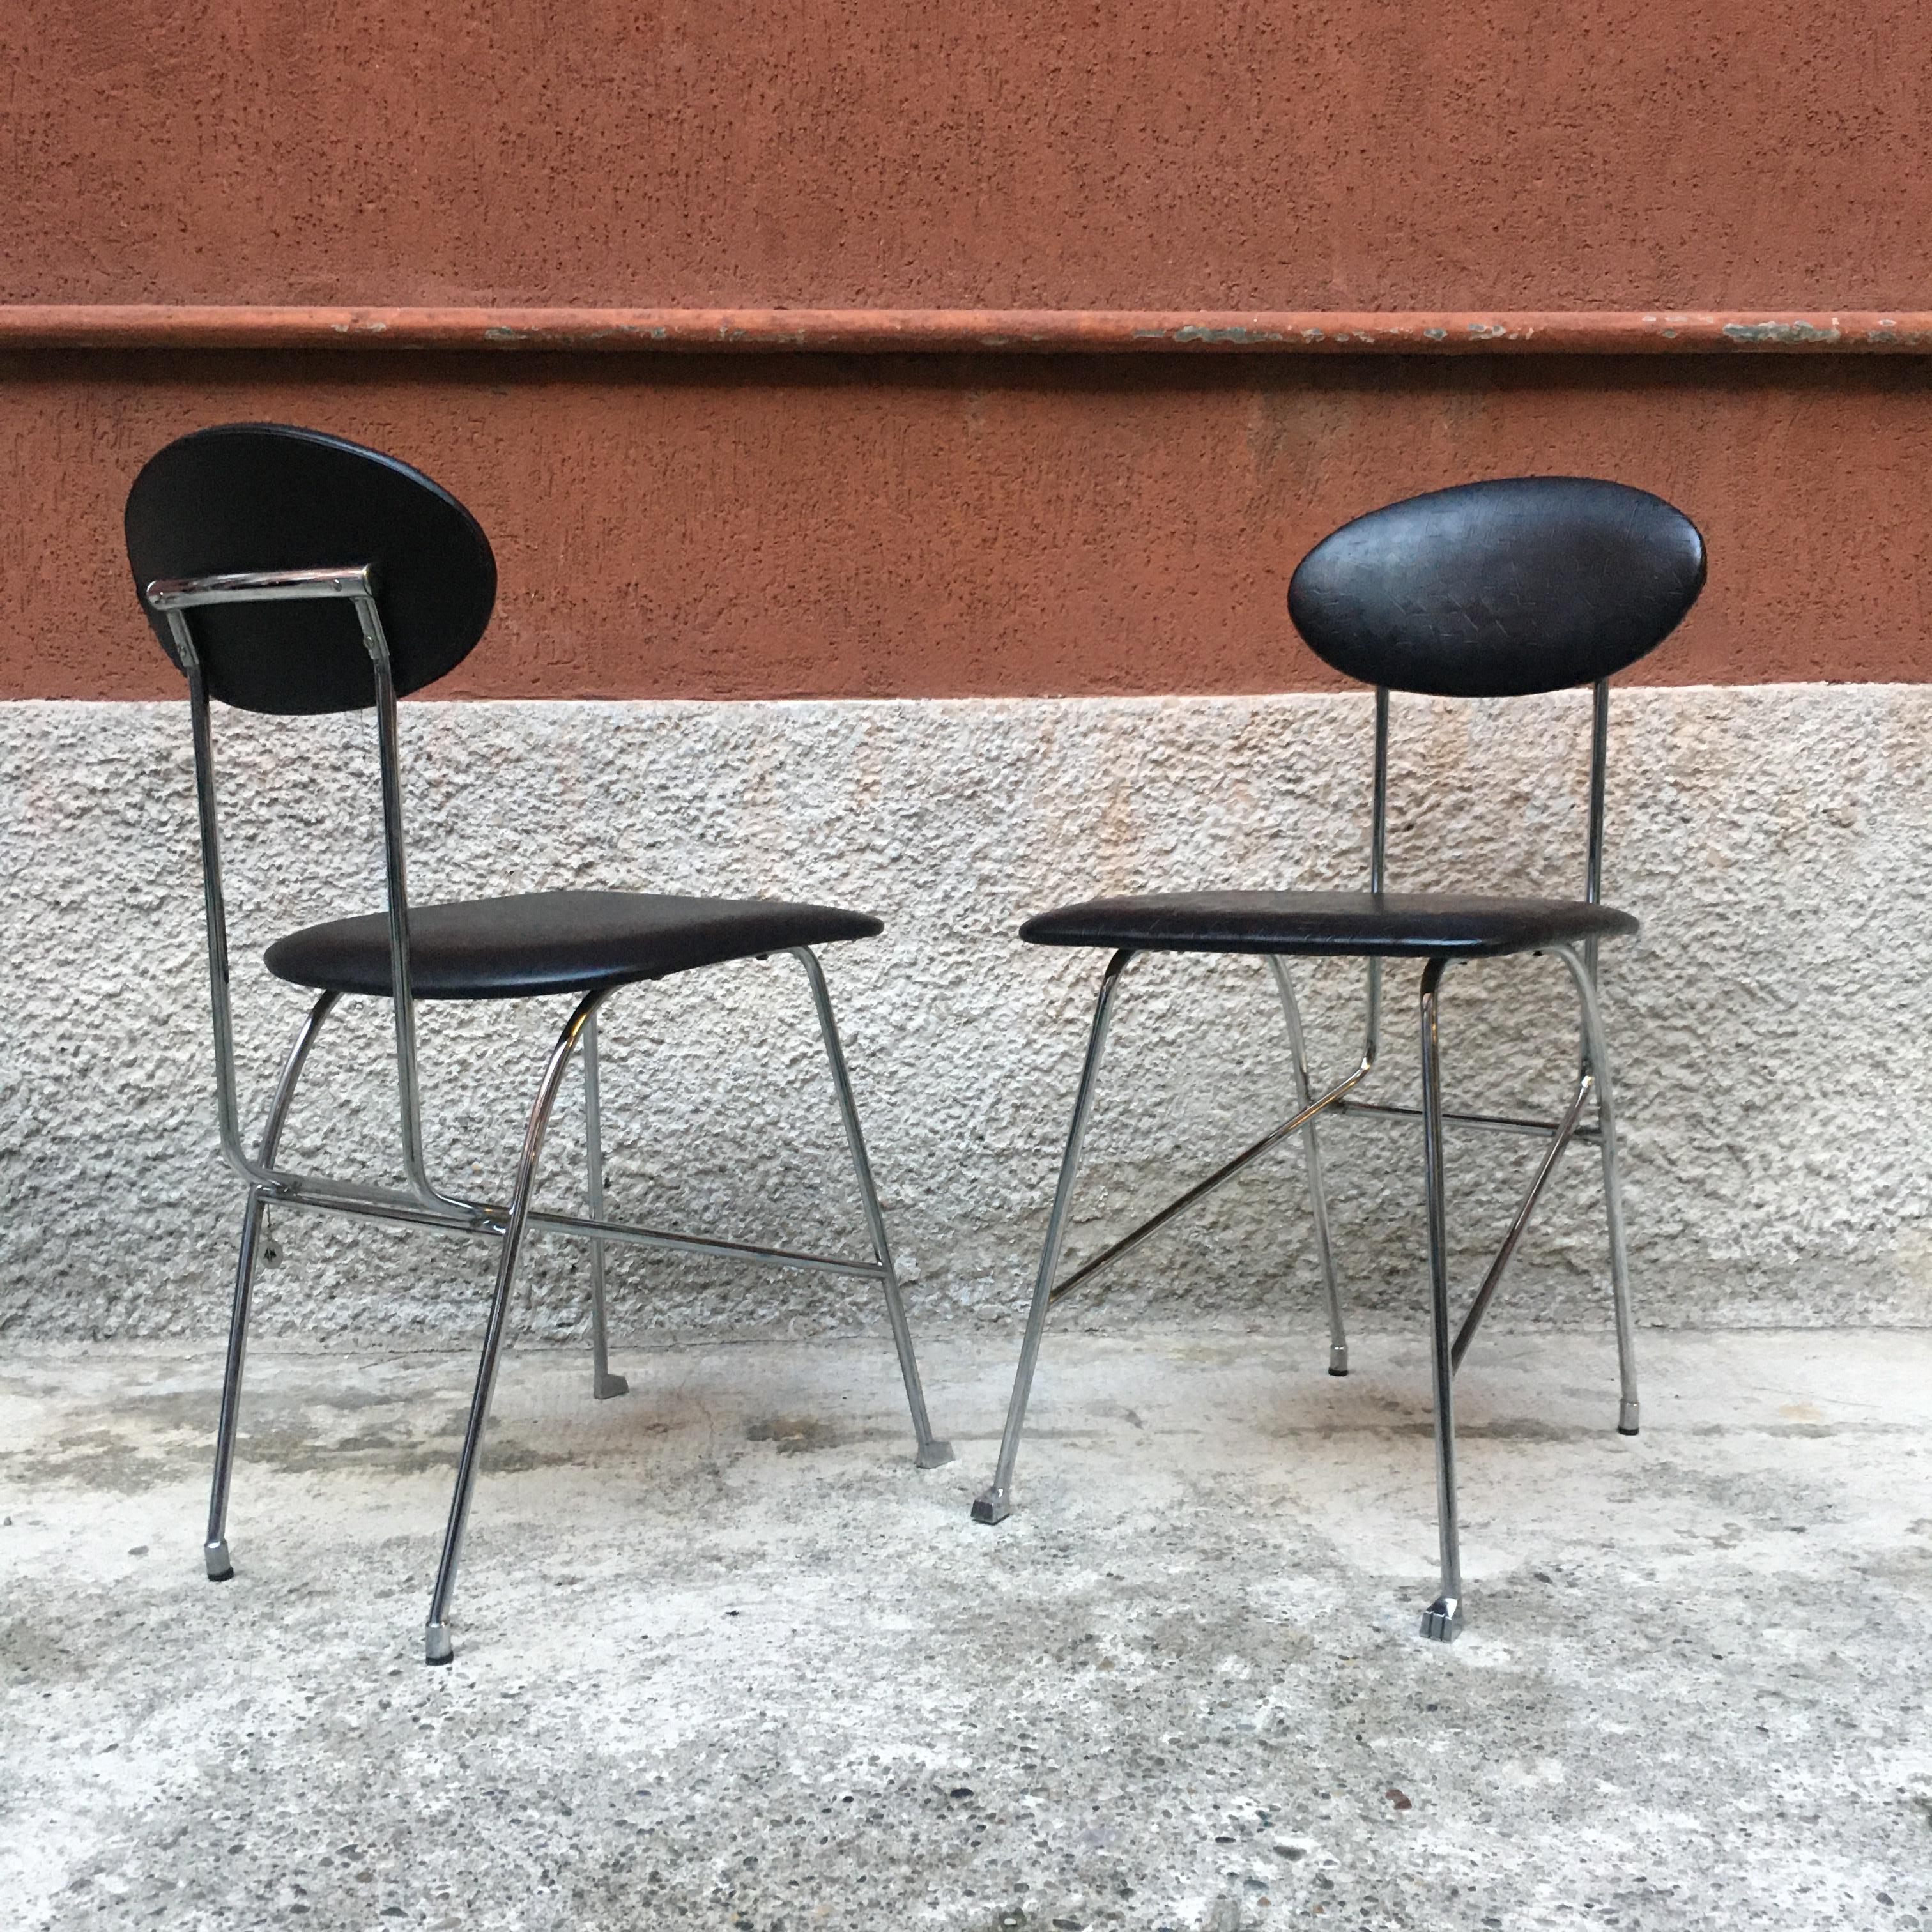 Italienische verchromte Metallstühle mit Lederbezug von Mendini für Zabro, 1980er Jahre
Stühle mit verchromtem Metallgestell, mit eleganter Fußkappe und Sitz und Rückenlehne aus schwarzem Leder, entworfen von Alessandro Mendini für Zabro.
Auf